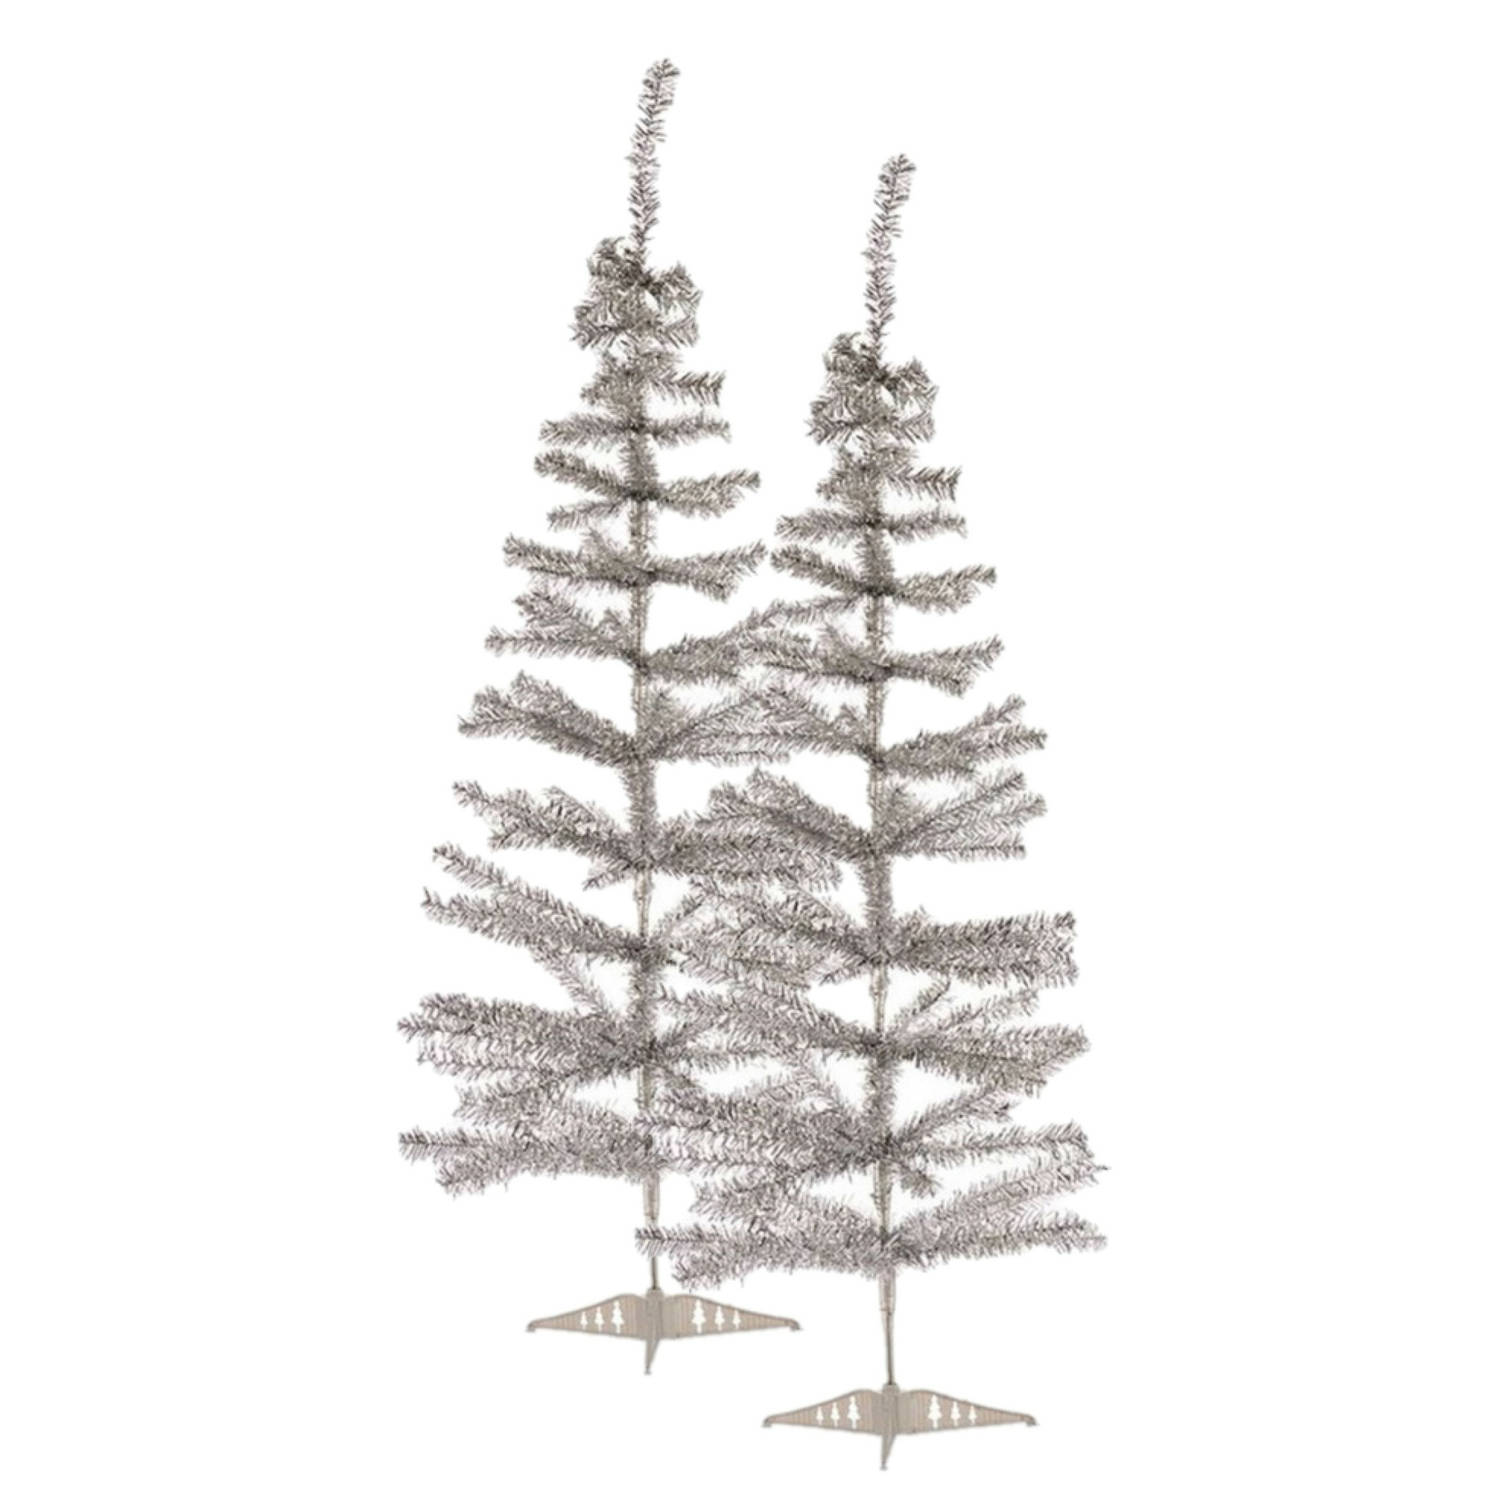 2x stuks kleine zilveren kerstbomen van 120 cm - Kunstkerstboom